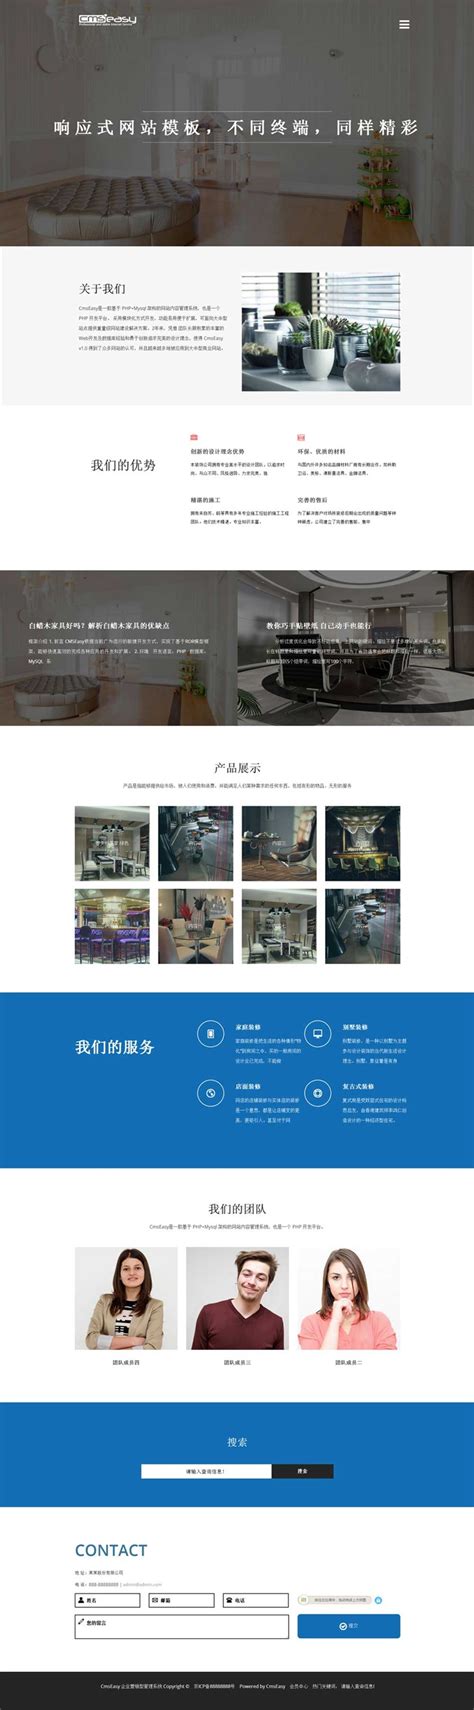 25个免费的网站模板PSD - 蓝蓝设计_UI设计公司